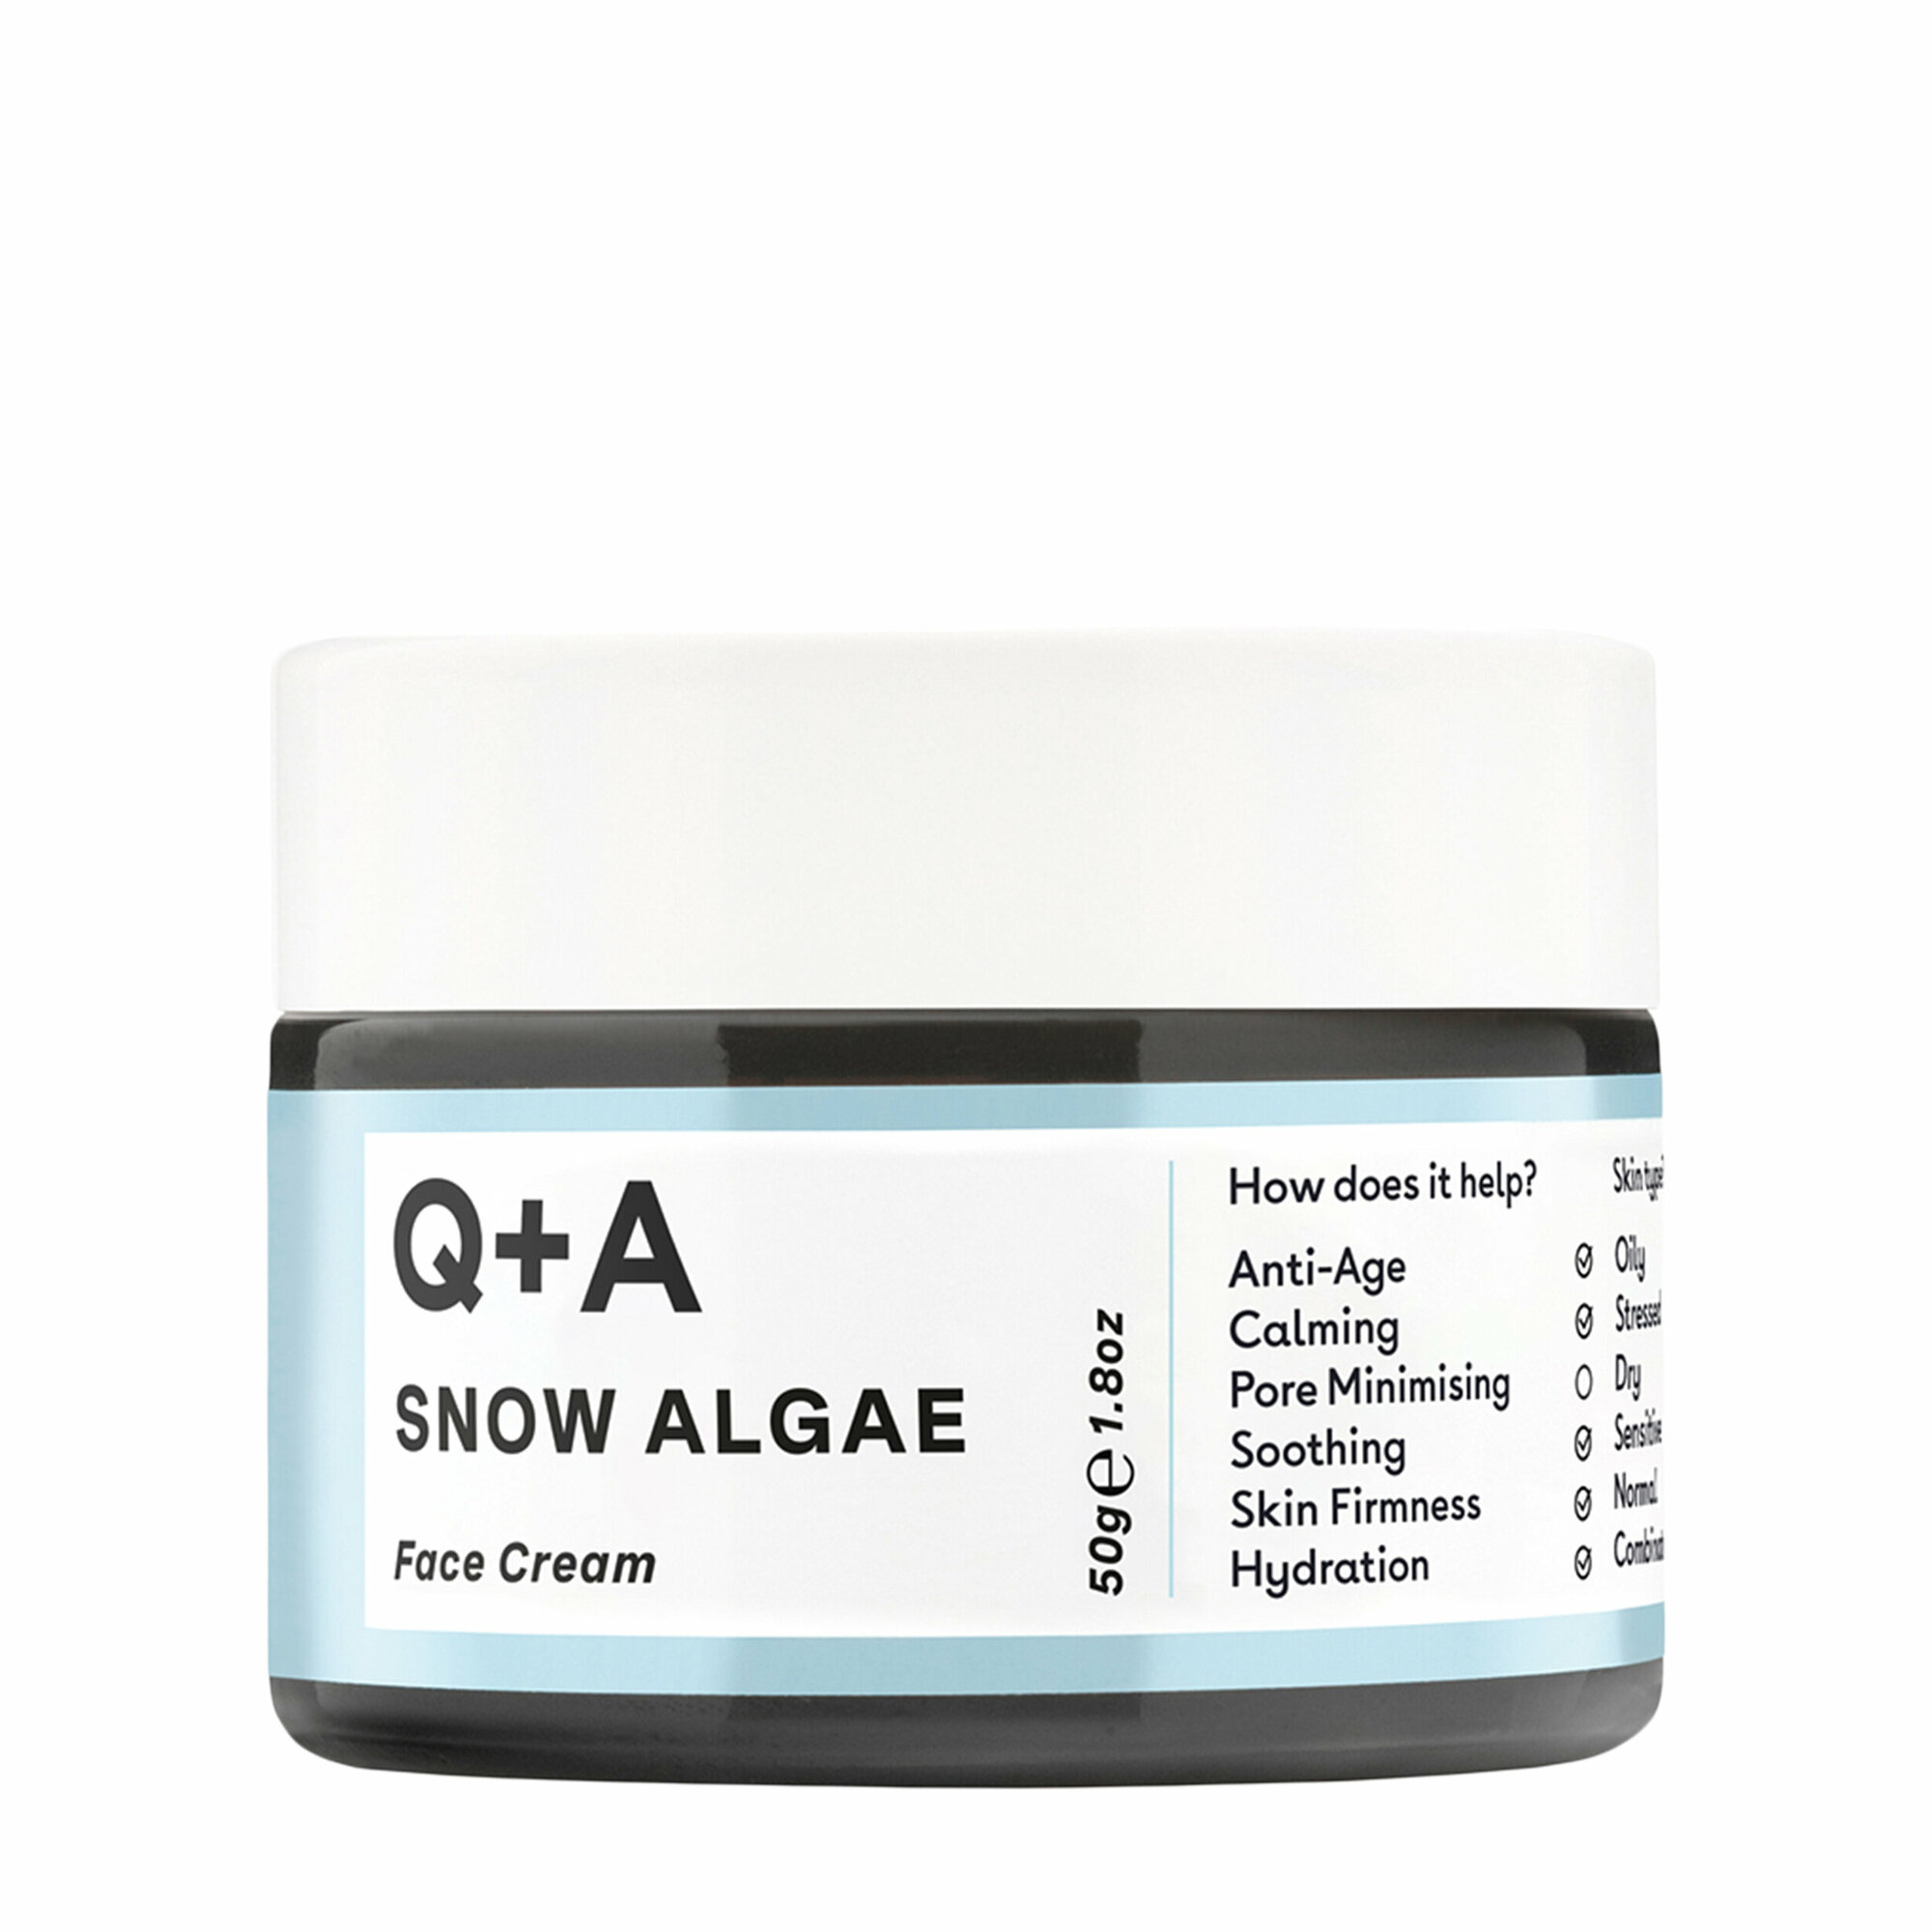 Q+A Питательный крем для лица Snow Algae 50 гр